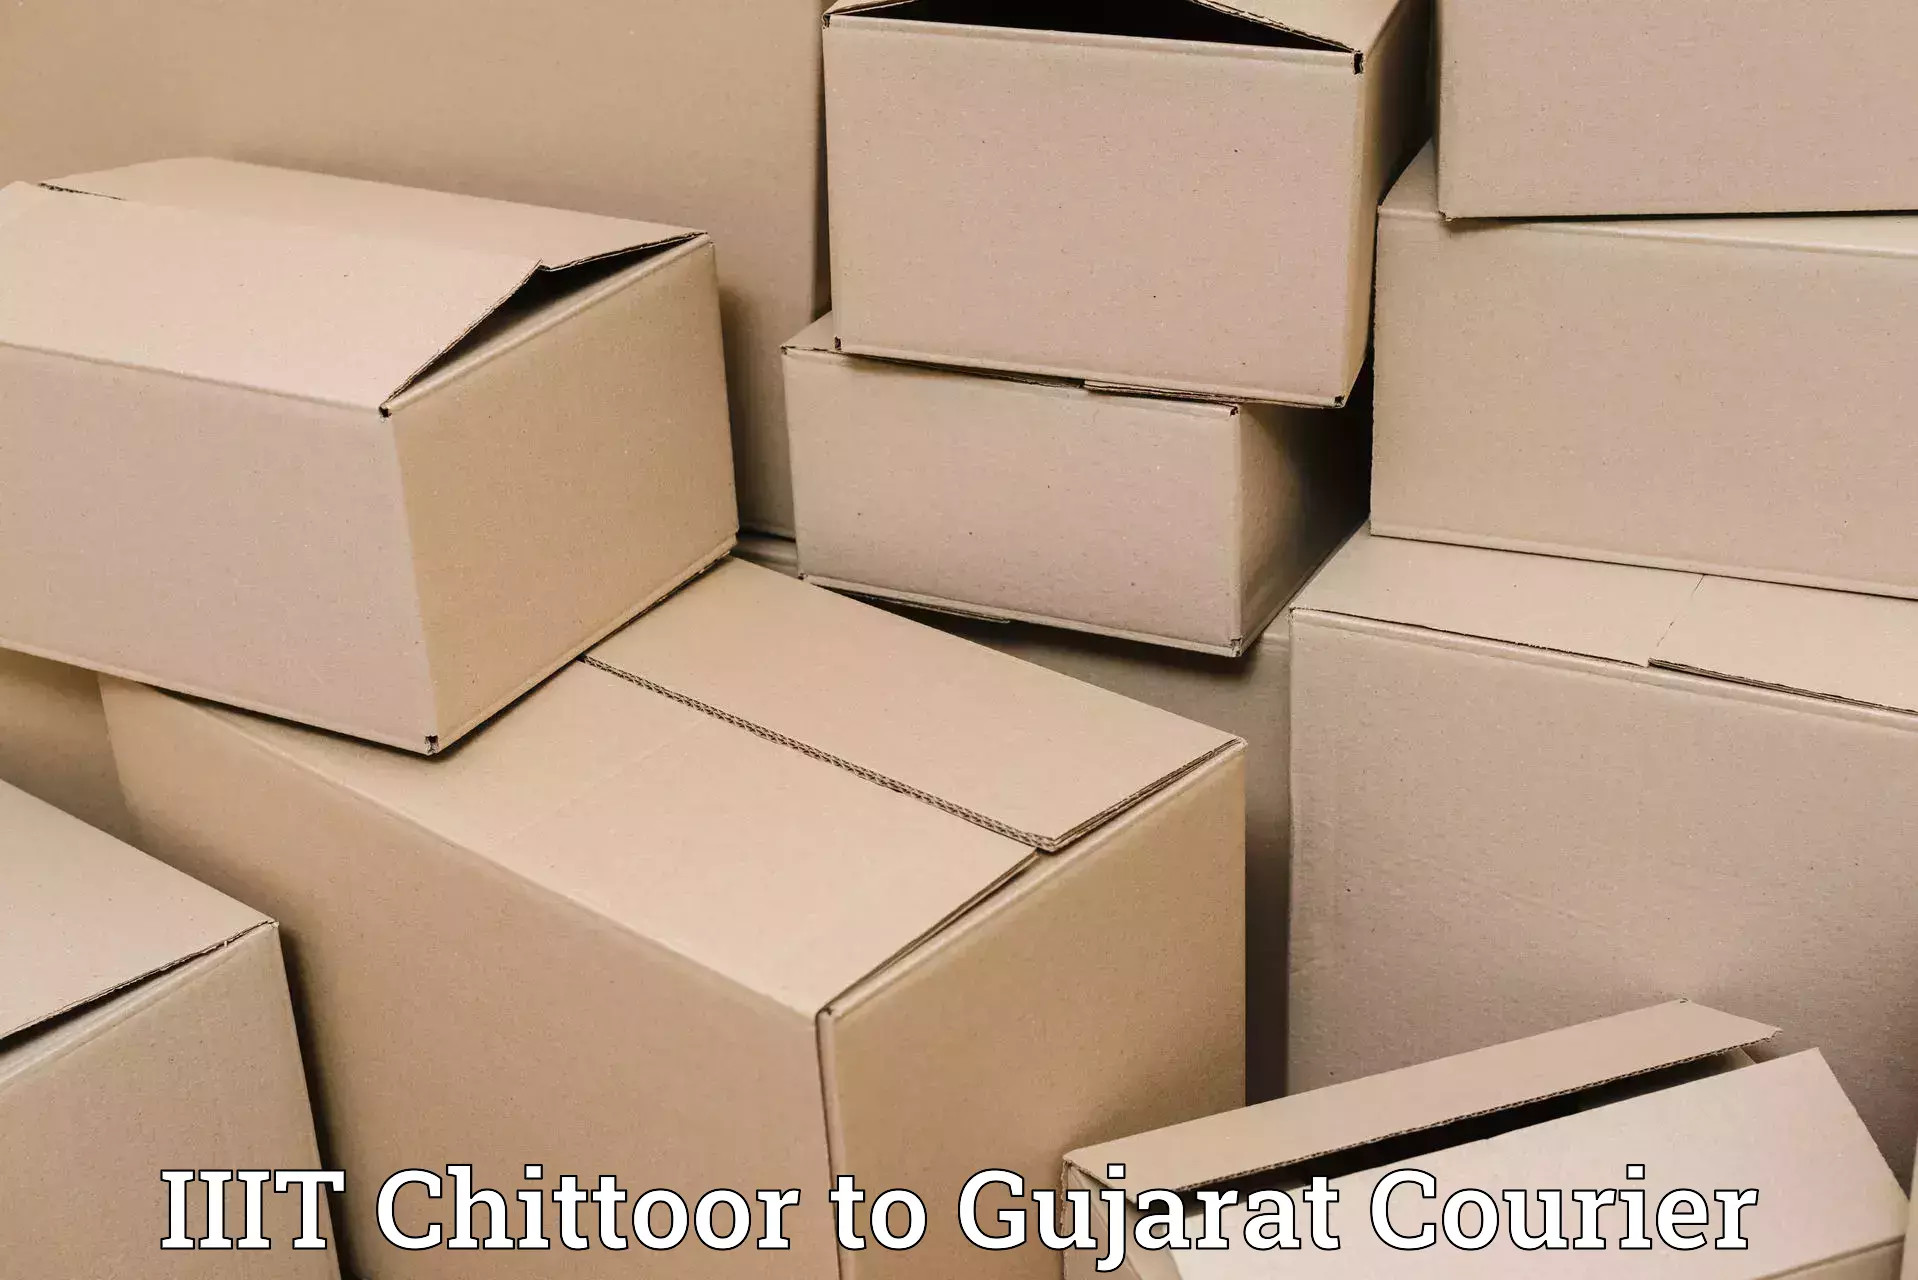 Courier insurance in IIIT Chittoor to Gujarat